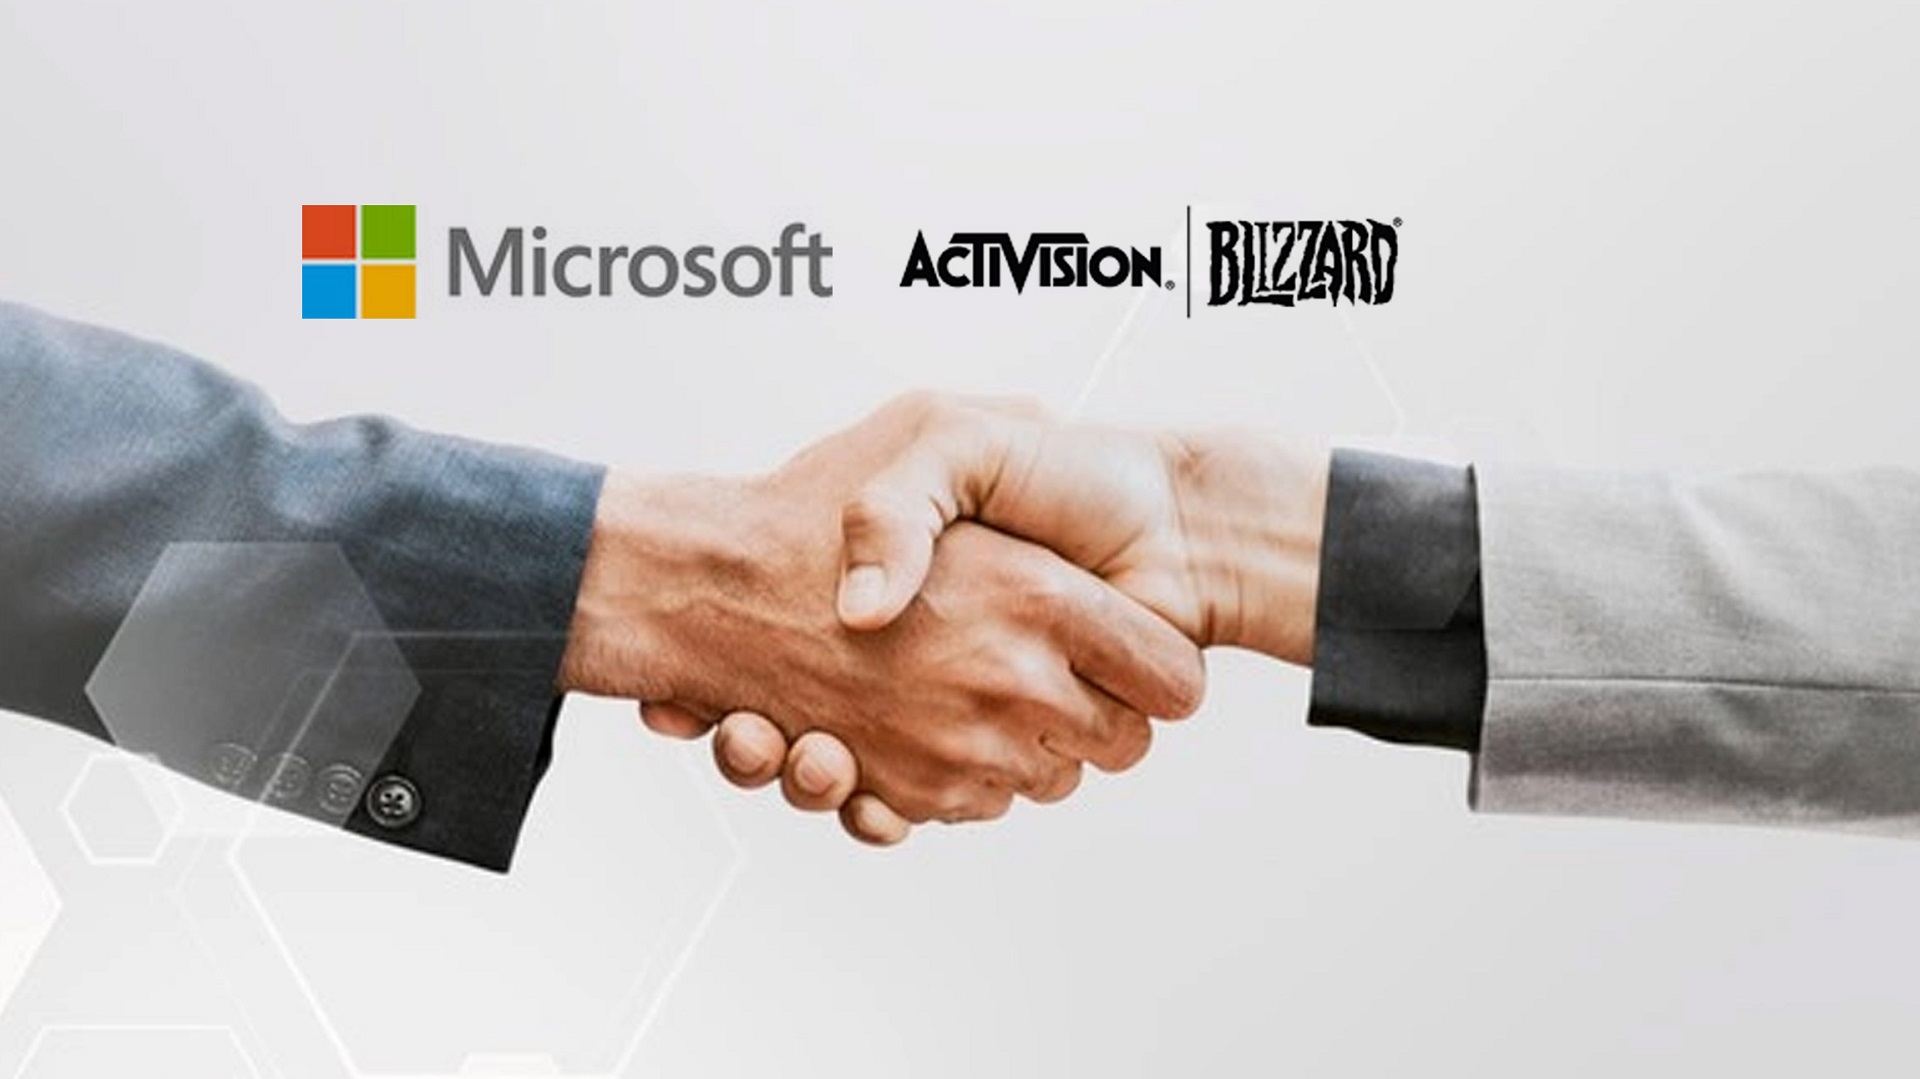 معامله خرید اکتیویژن بلیزارد توسط مایکروسافت در صربستان تایید شد